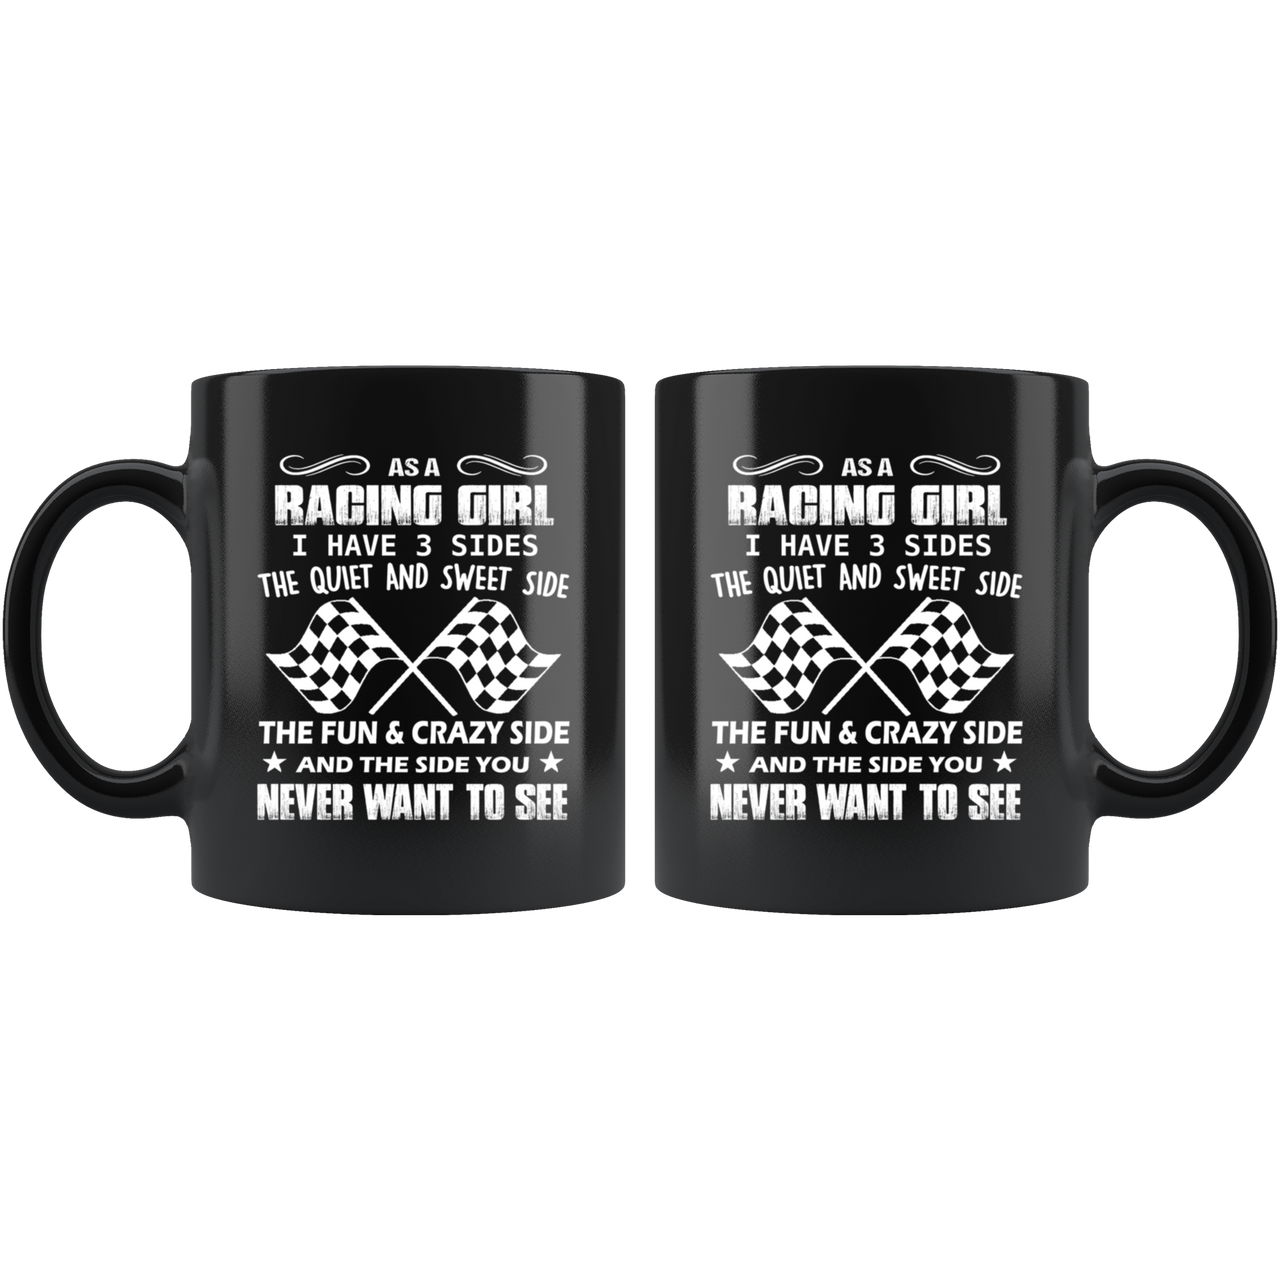 As A Racing Girl I Have 3 Sides Mug!